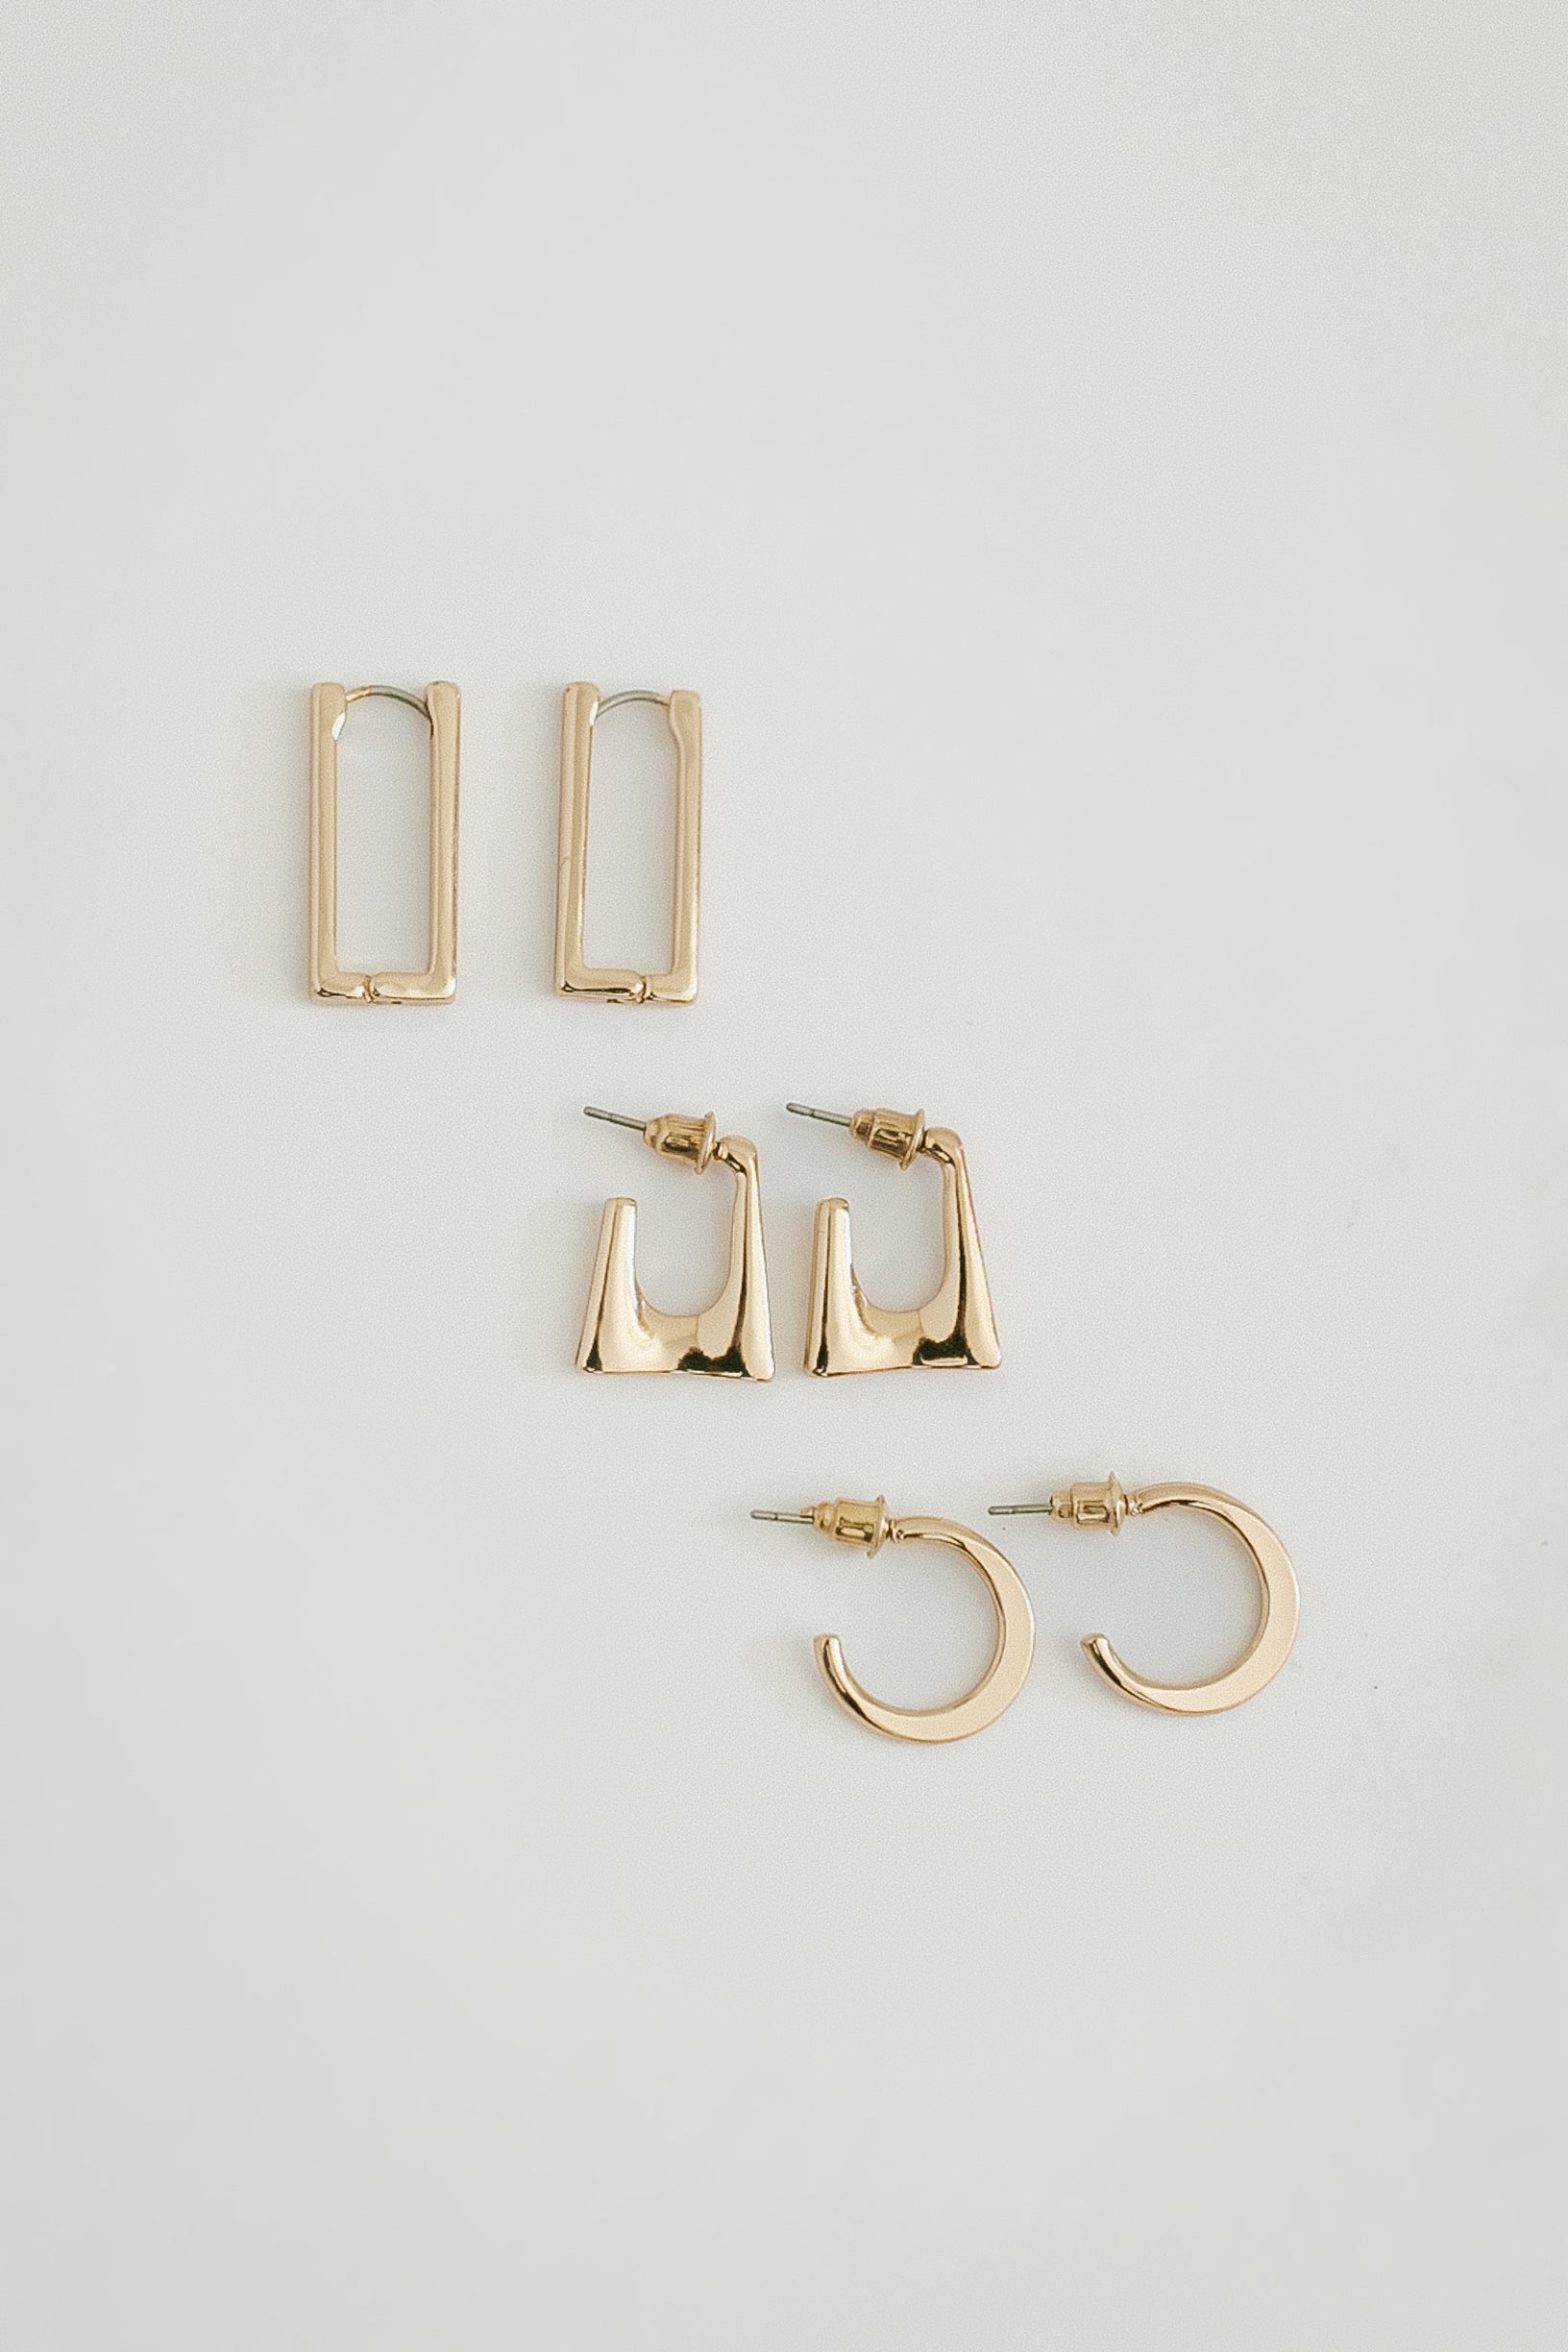 Delmar Earring - Set Of 3 - Gold